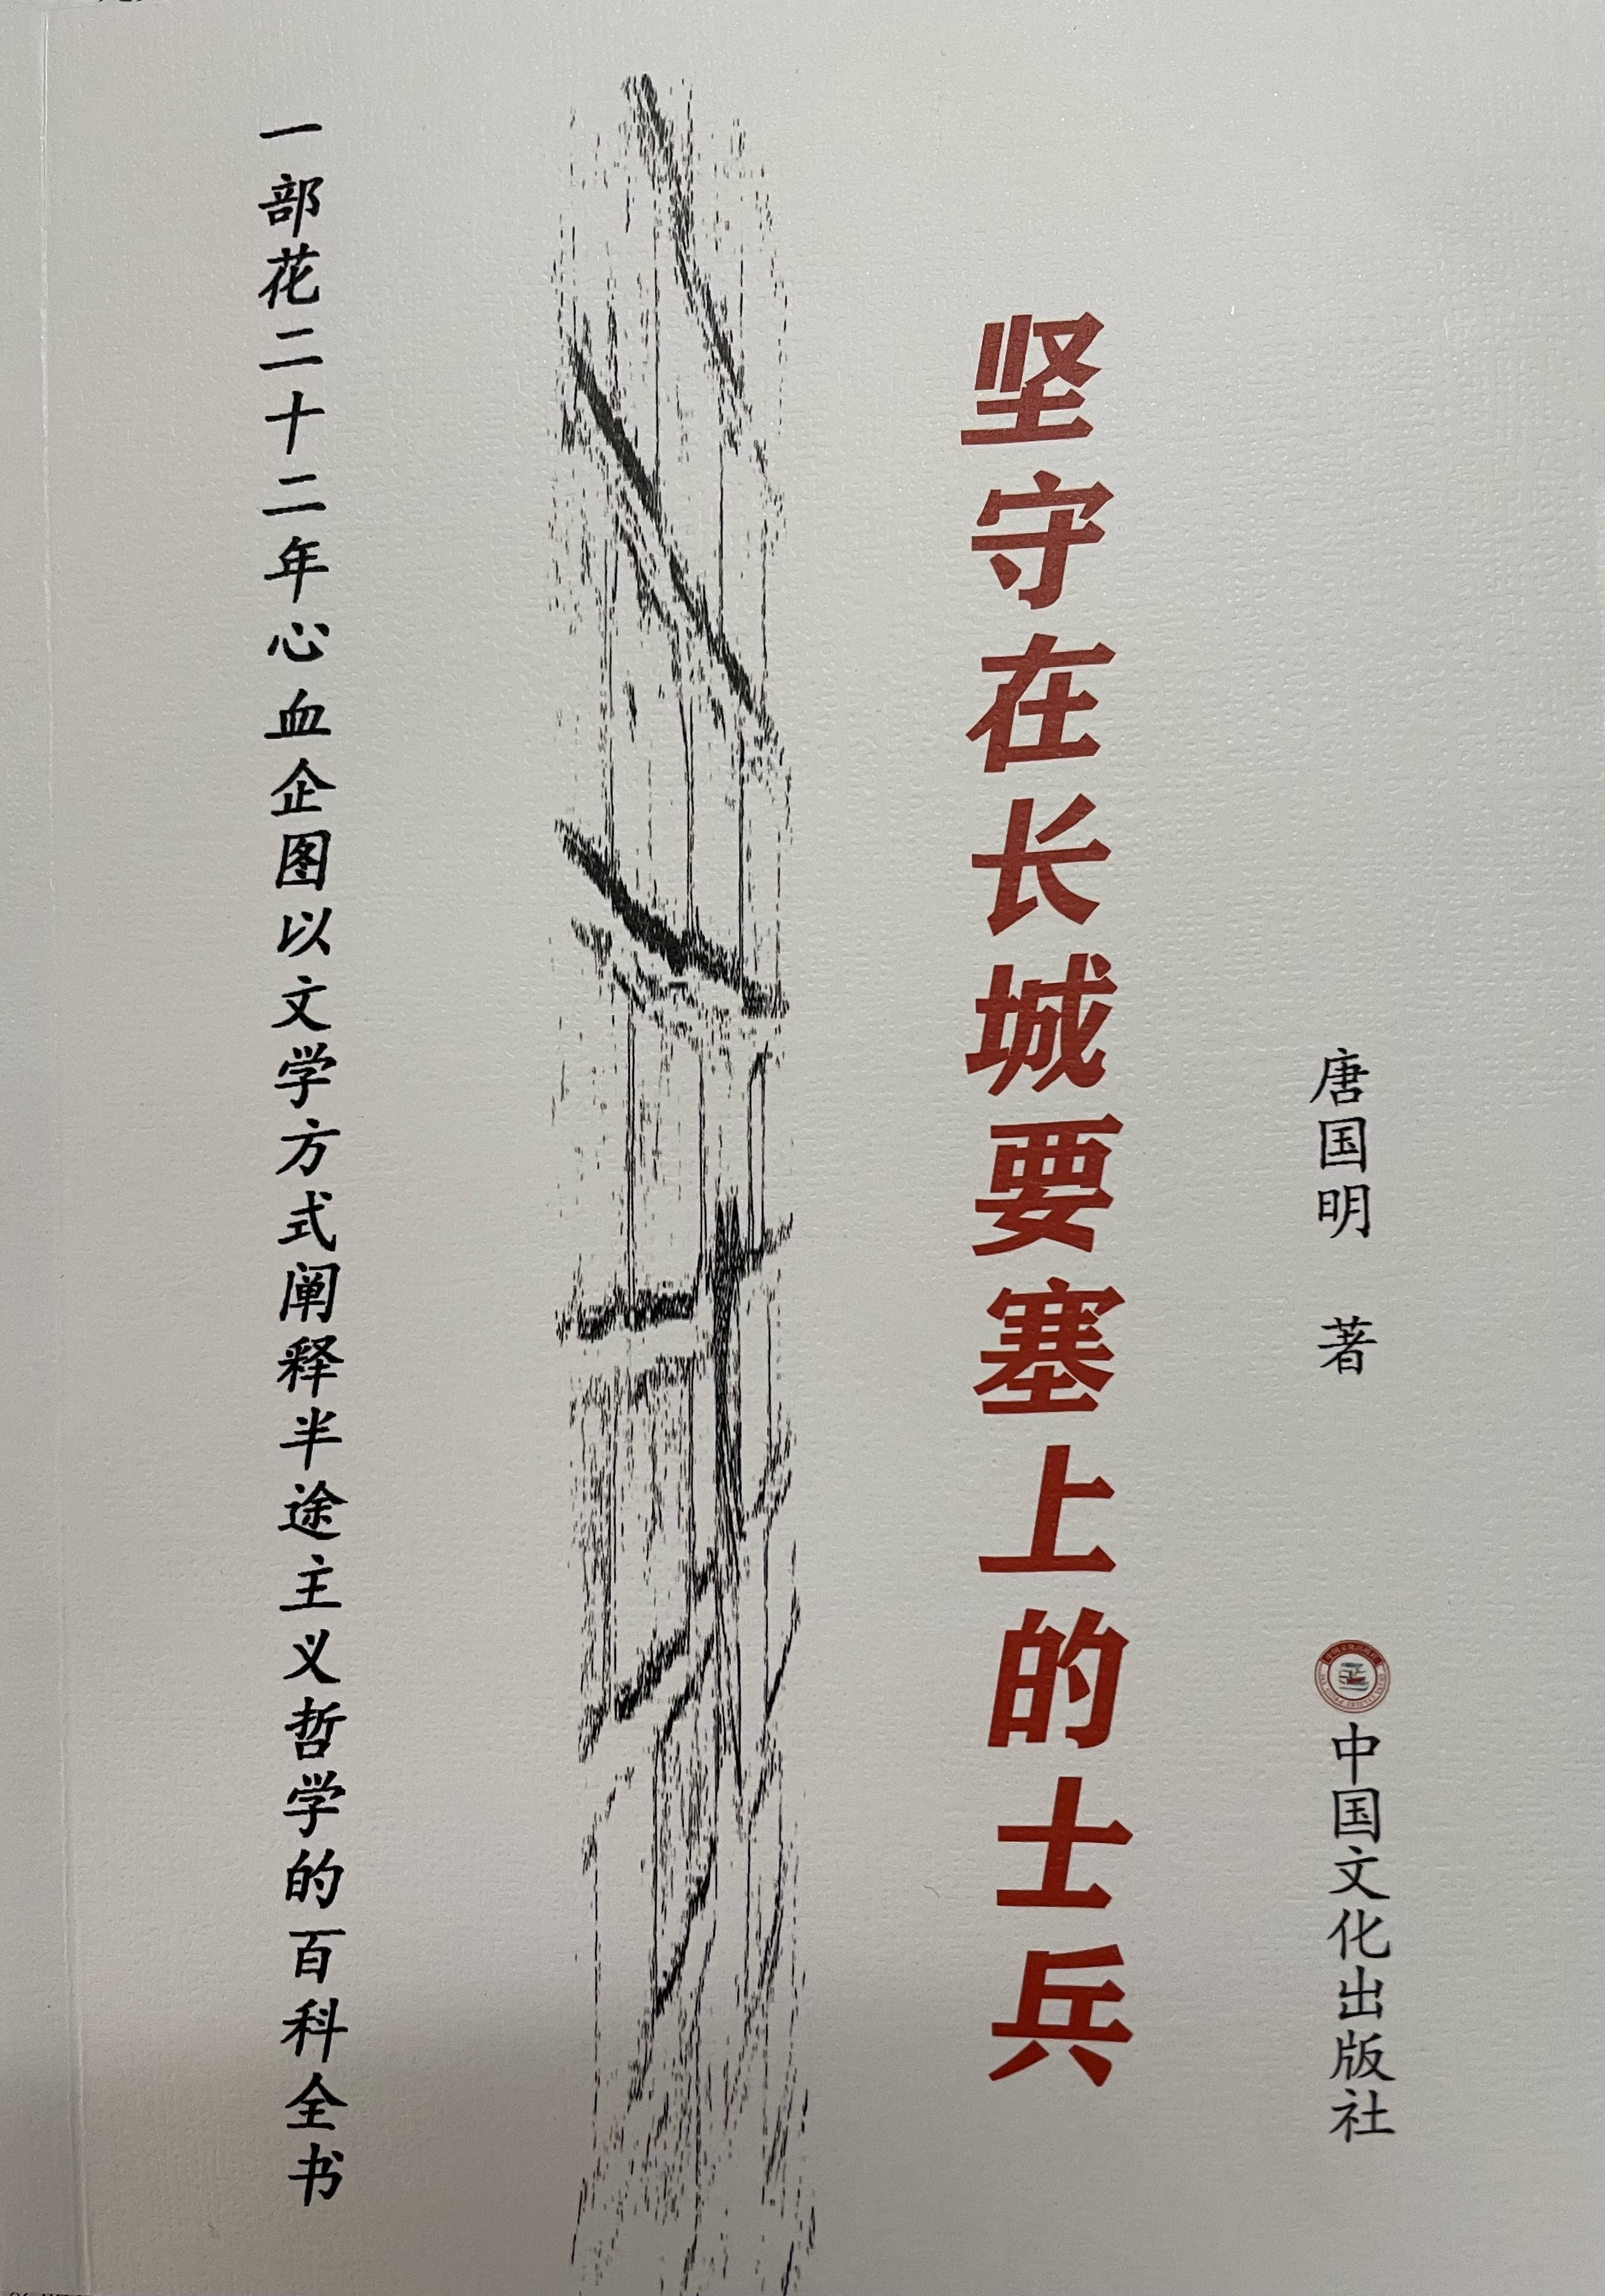 出版诗意流长篇《坚守在长城要塞上的士兵》的著名作家唐国明鹅毛诗选读